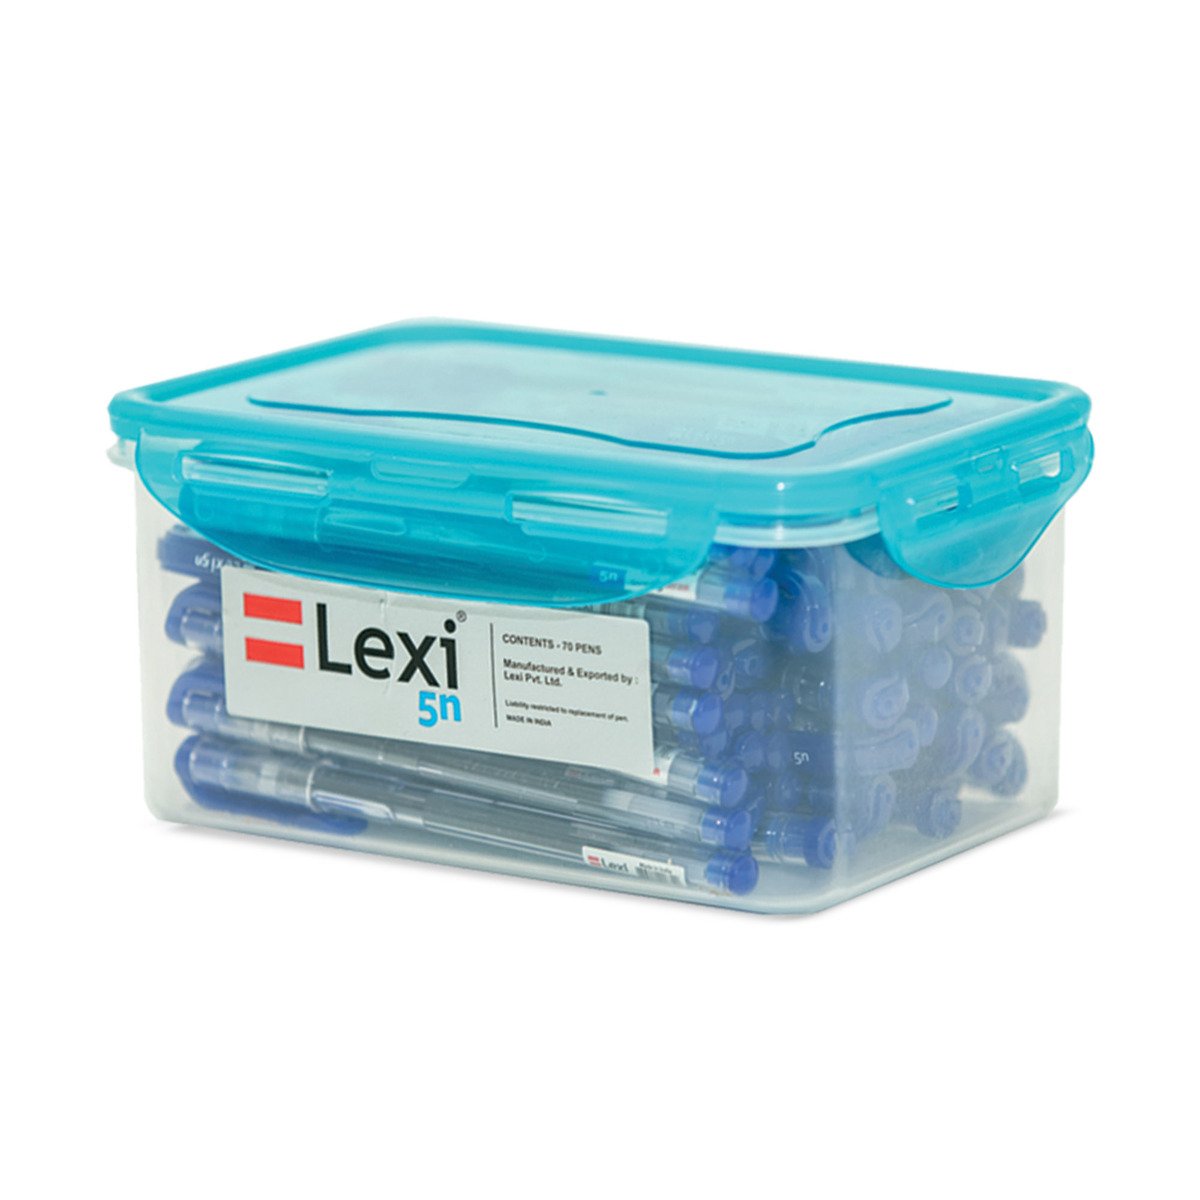 ليكسي-5 علبة أقلام حبر زرقاء جافة 70 حبة